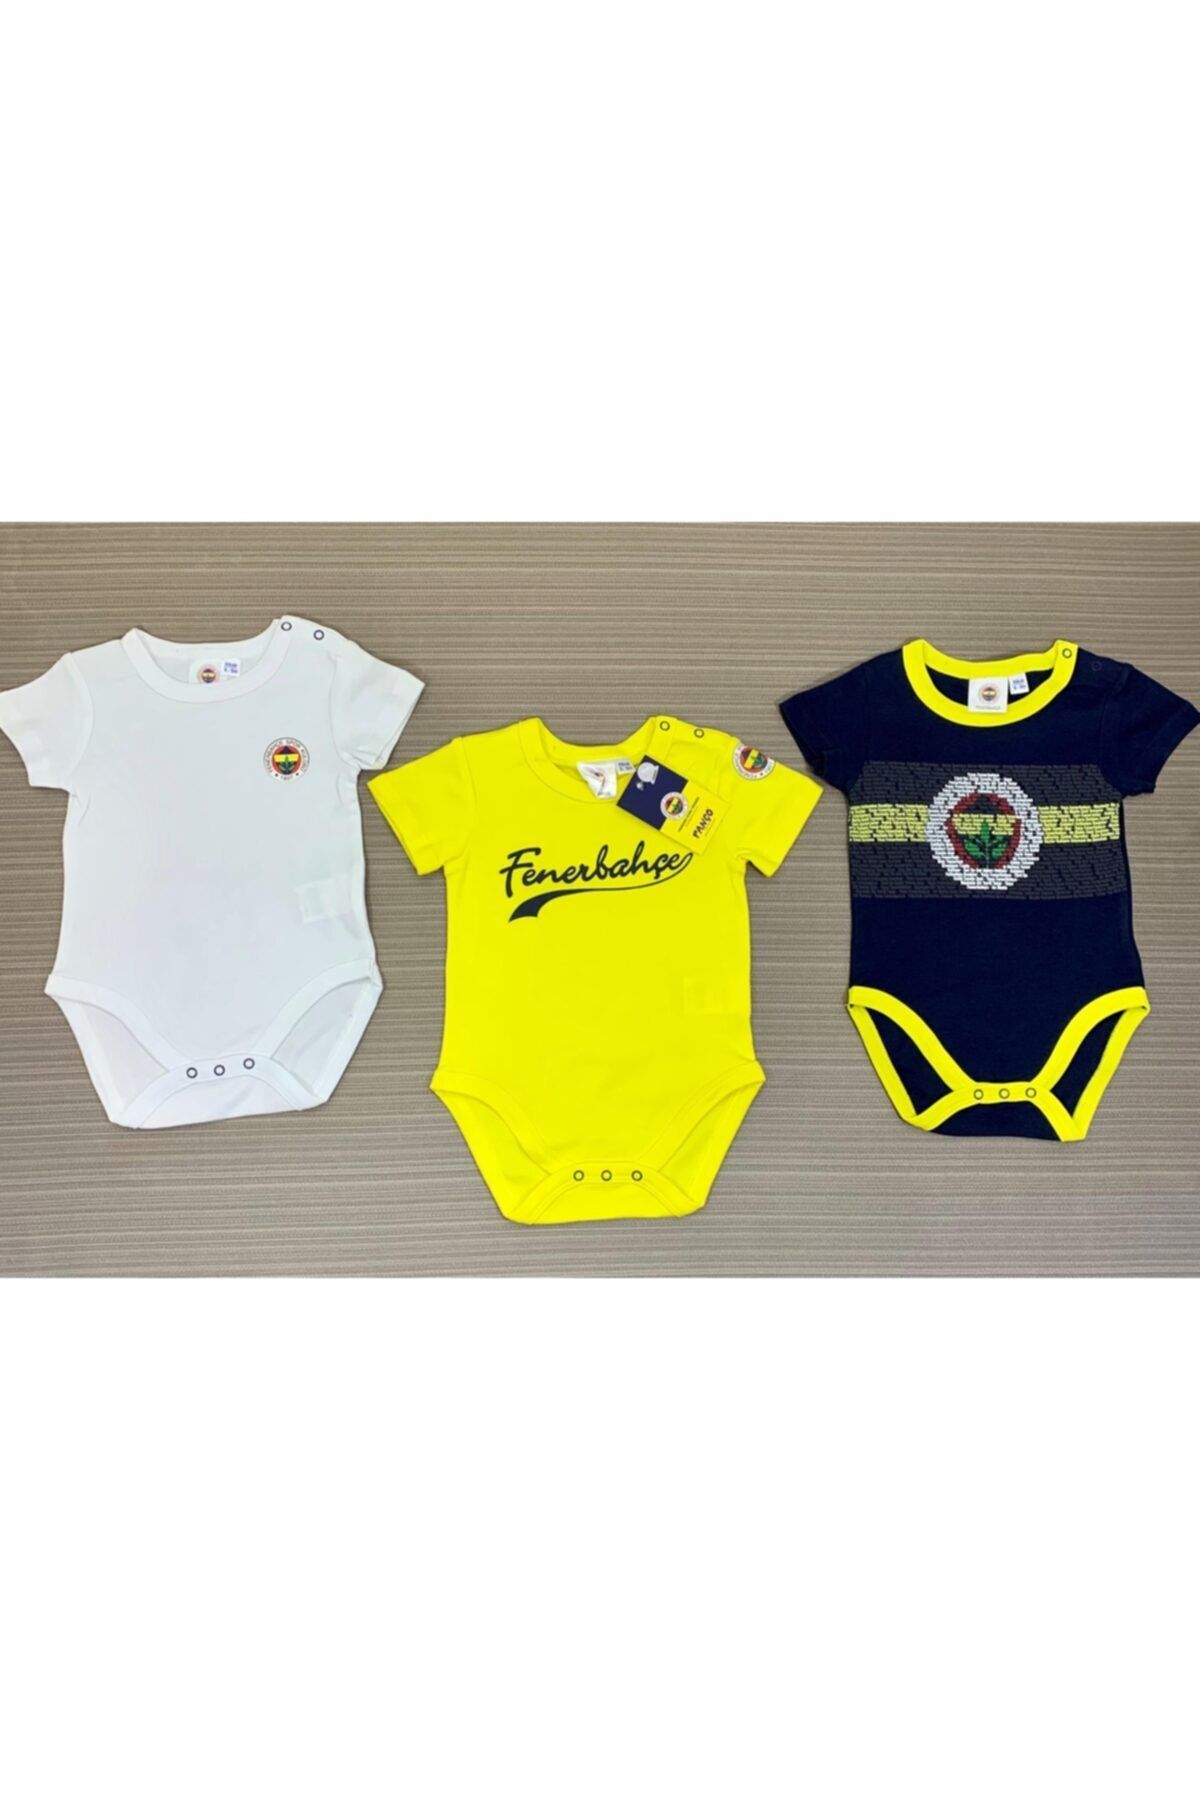 Fenerbahçe Fenerbahçe Lisanslı Erkek Bebek 3 Lü Body 1-18 Ay